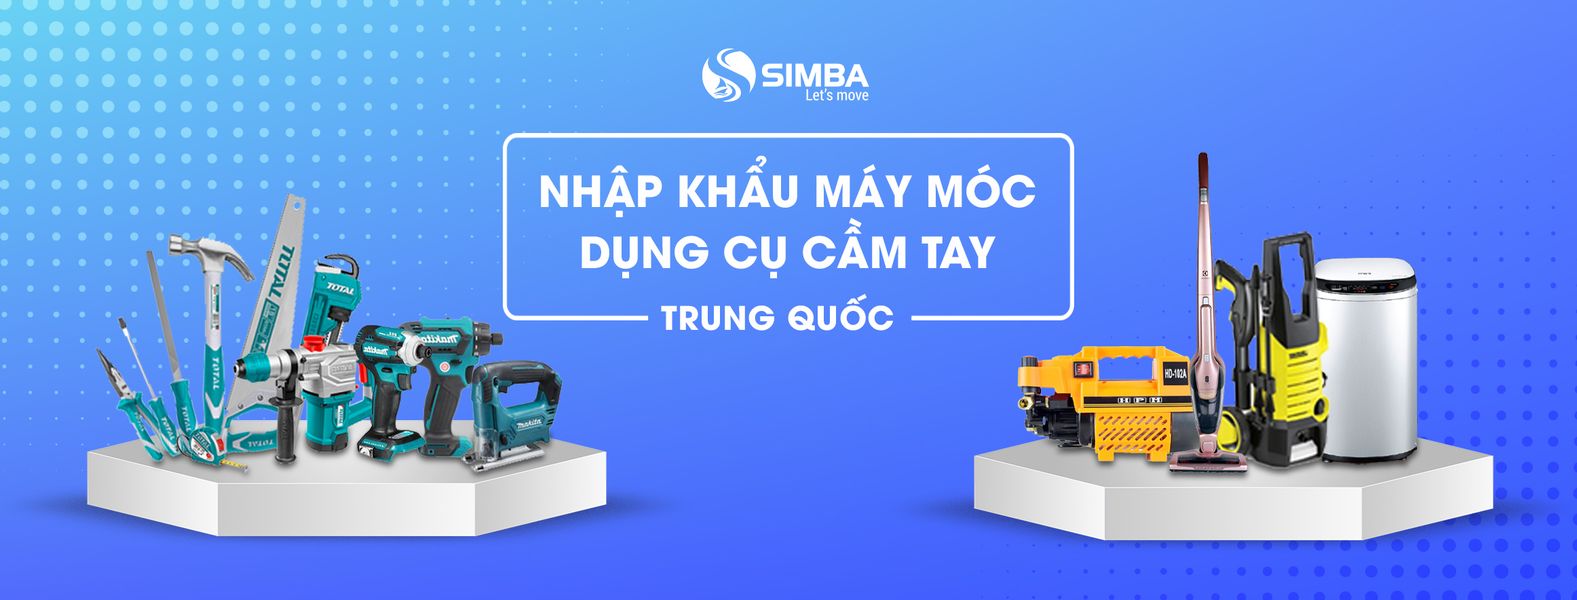 Simba - Đơn vị cung cấp dịch vụ tìm nguồn, vận chuyển máy cắt sắt cầm tay từ Trung Quốc về Việt Nam